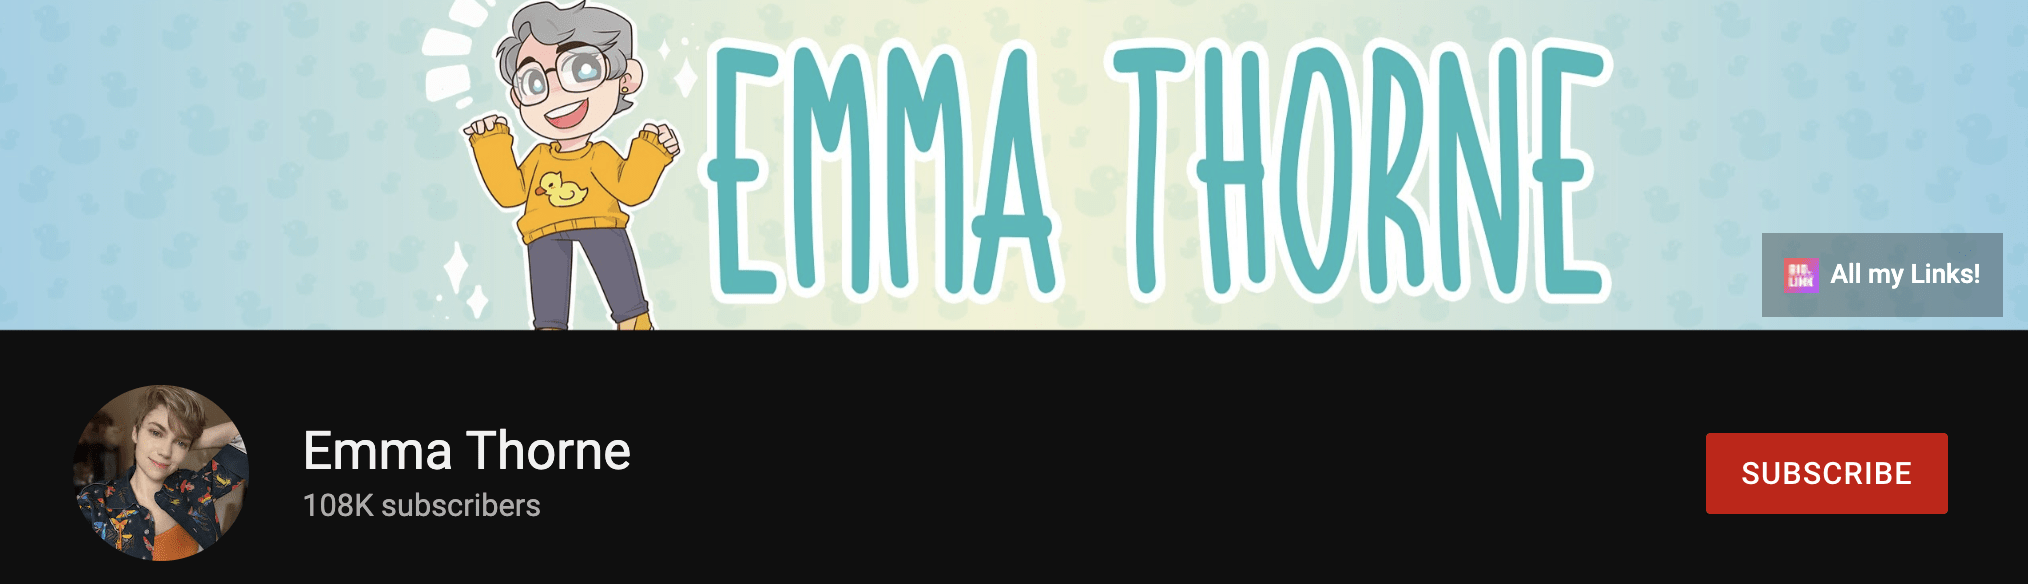 emma thorne